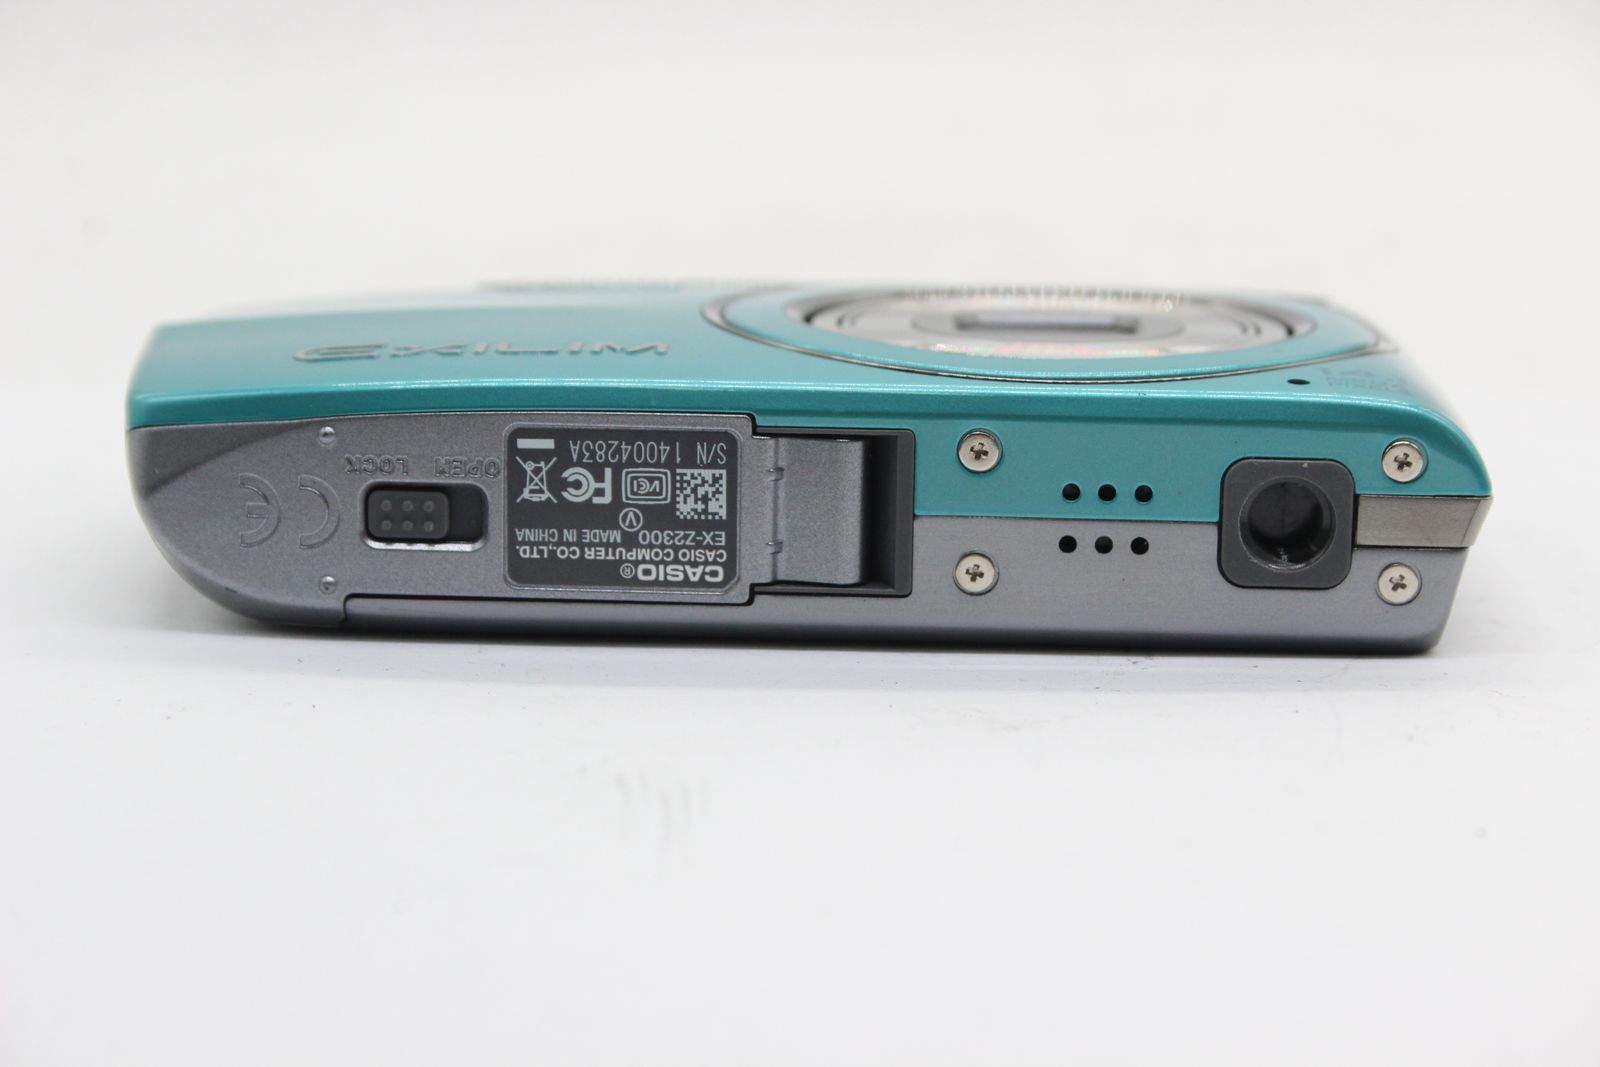 【美品 返品保証】 カシオ Casio Exilim EX-Z2300 ブルー 26mm Wide 5x バッテリー付き コンパクトデジタルカメラ  s5052